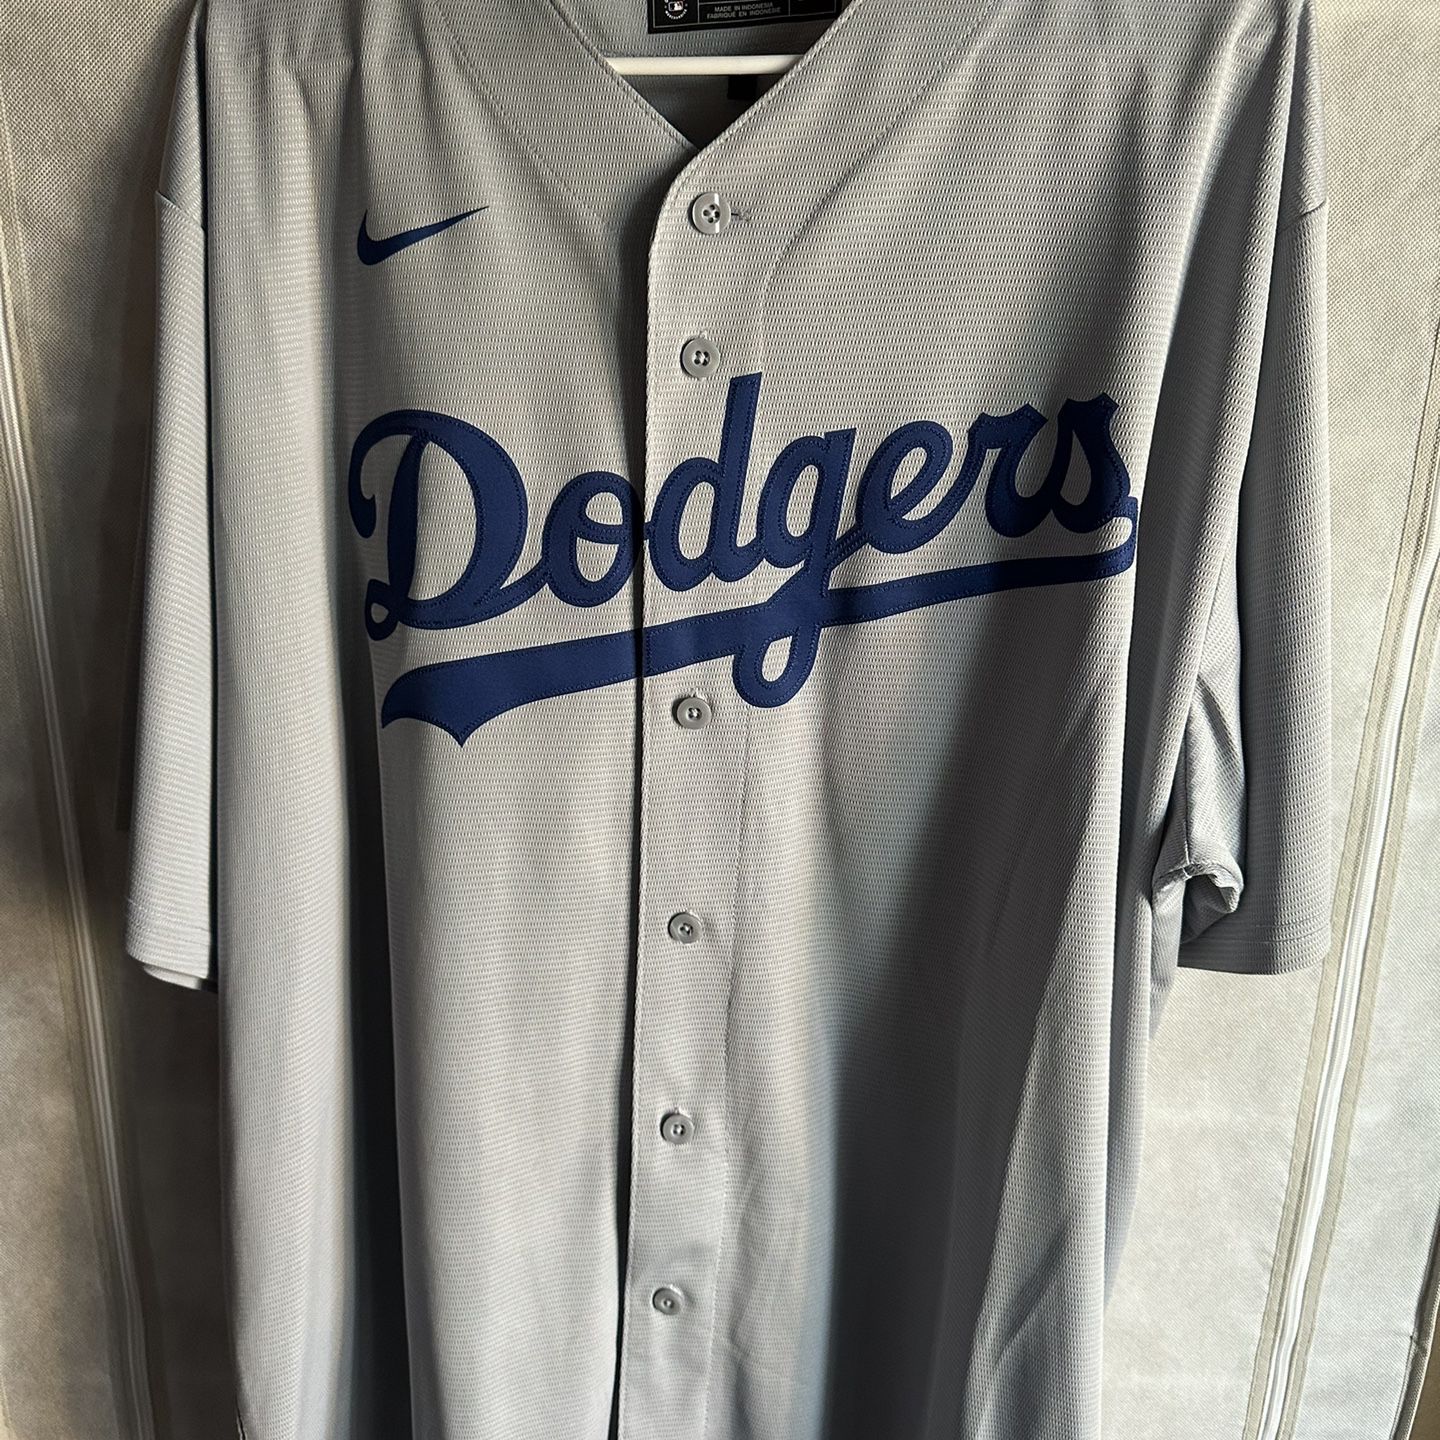 Dodgers Jerseys Size 2XL for Sale in Las Vegas, NV - OfferUp